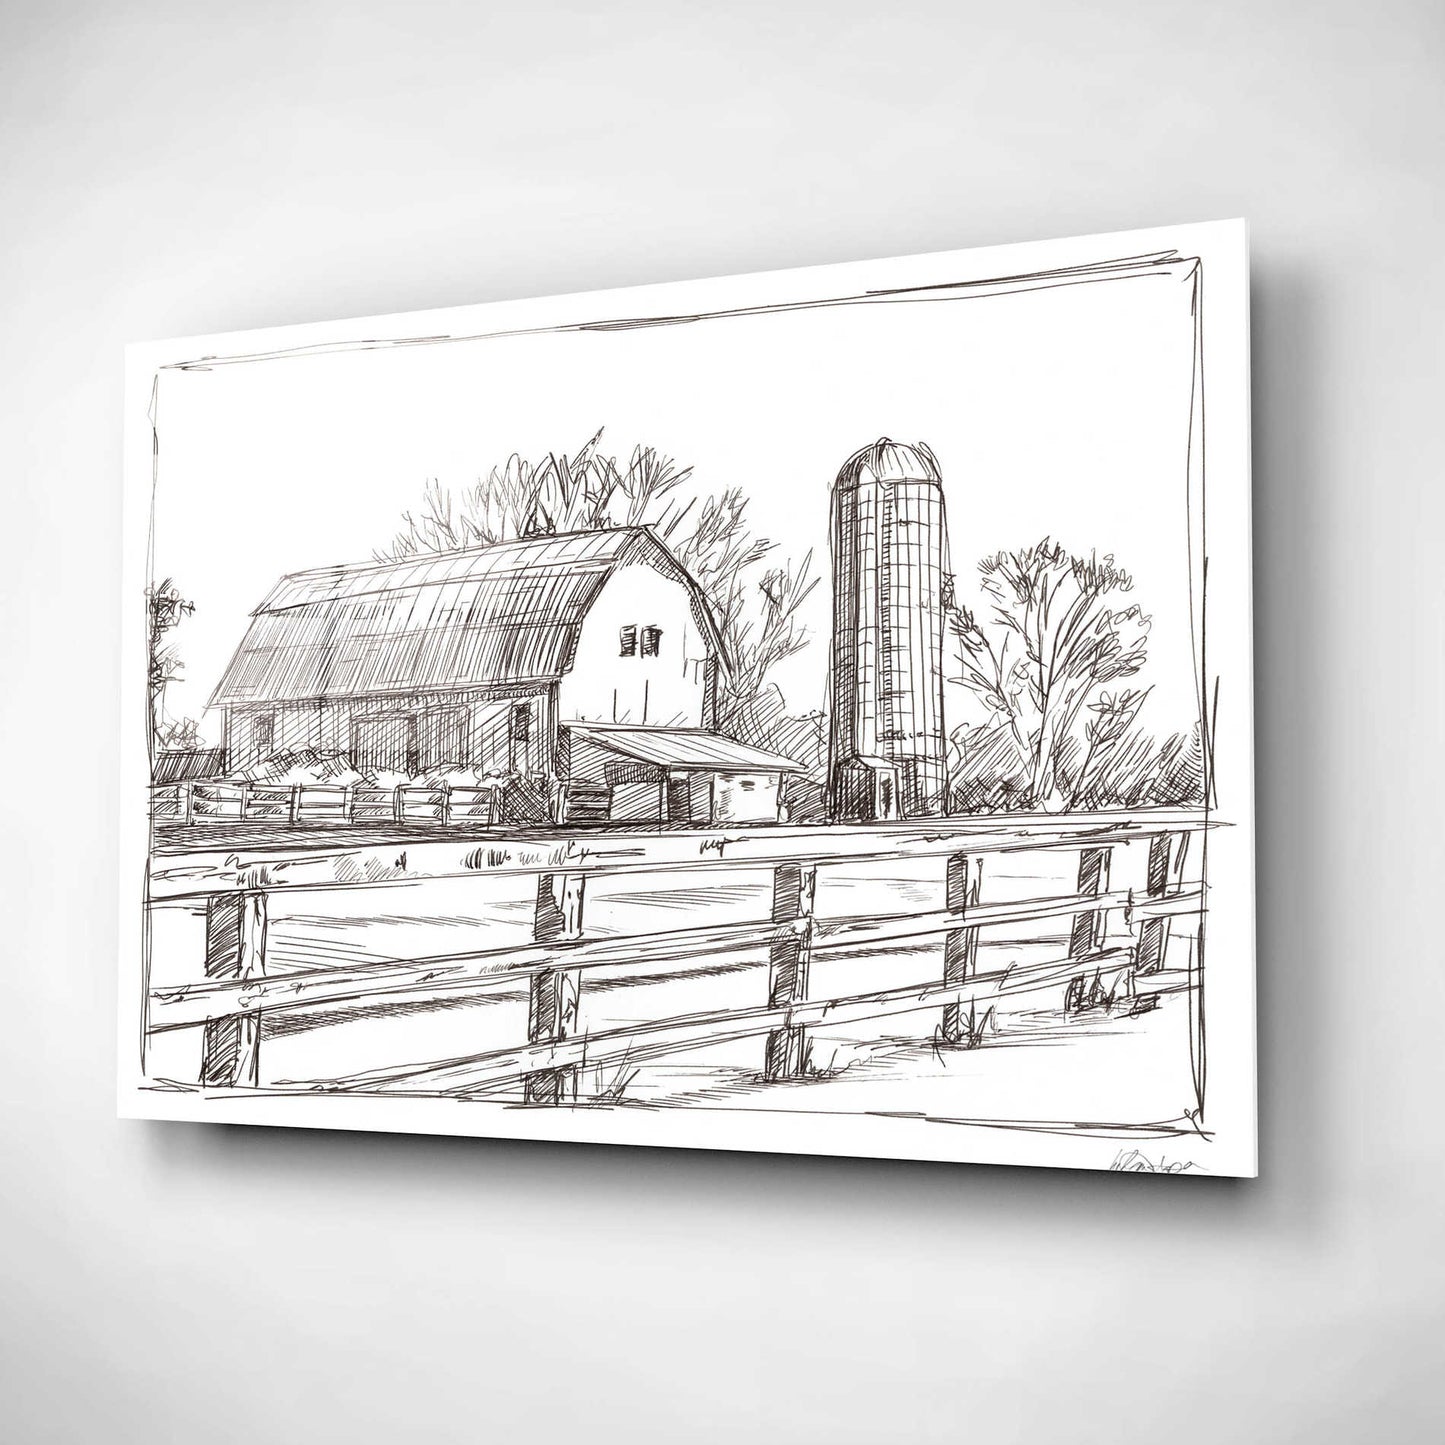 Epic Art 'Farm Sketch I' by Ethan Harper, Acrylic Glass Wall Art,16x12